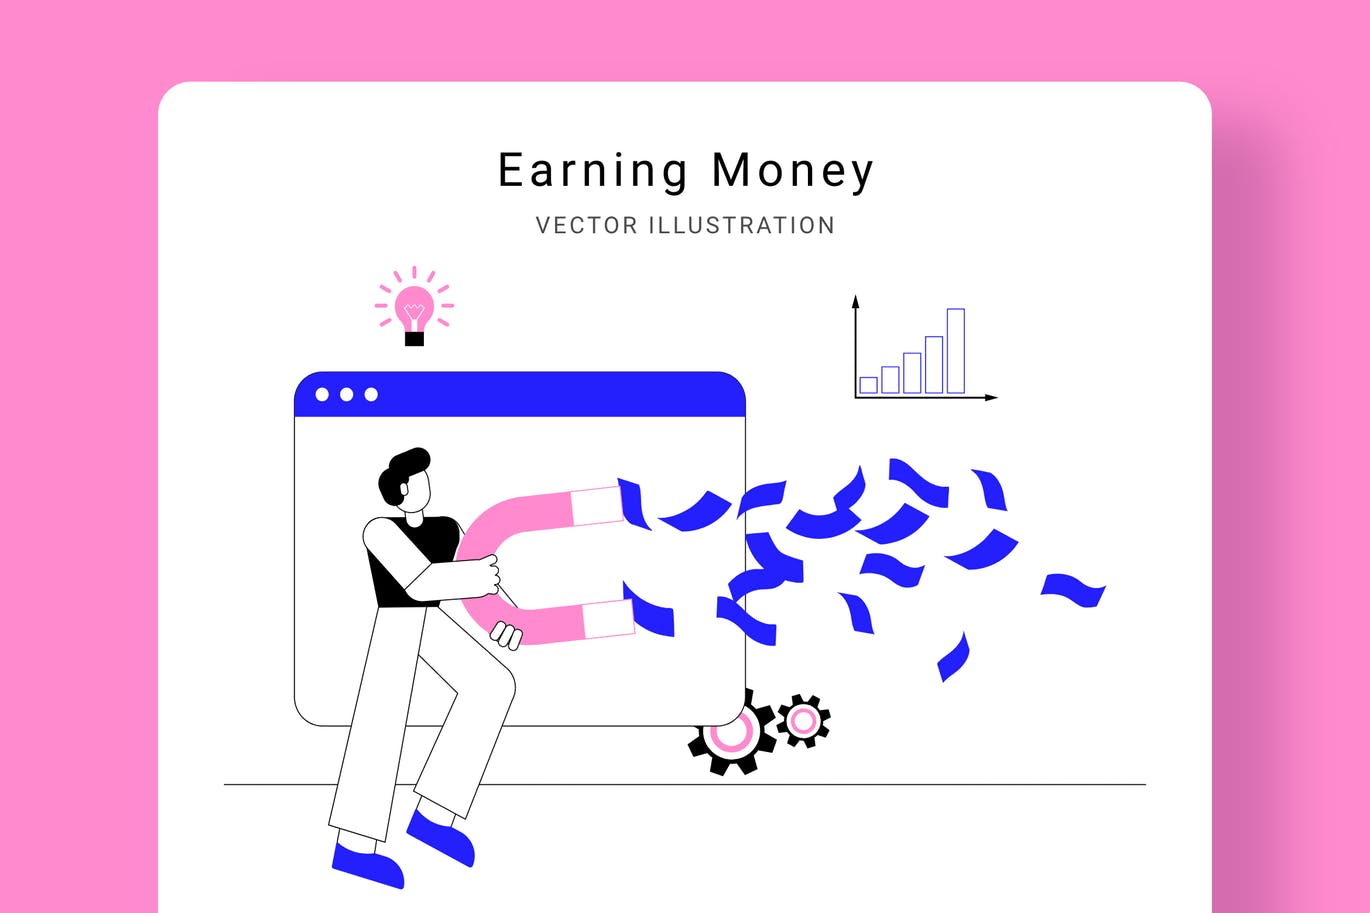 吸金磁石矢量第一素材精选概念插画设计素材 Earning Money Vector Illustration Scene插图